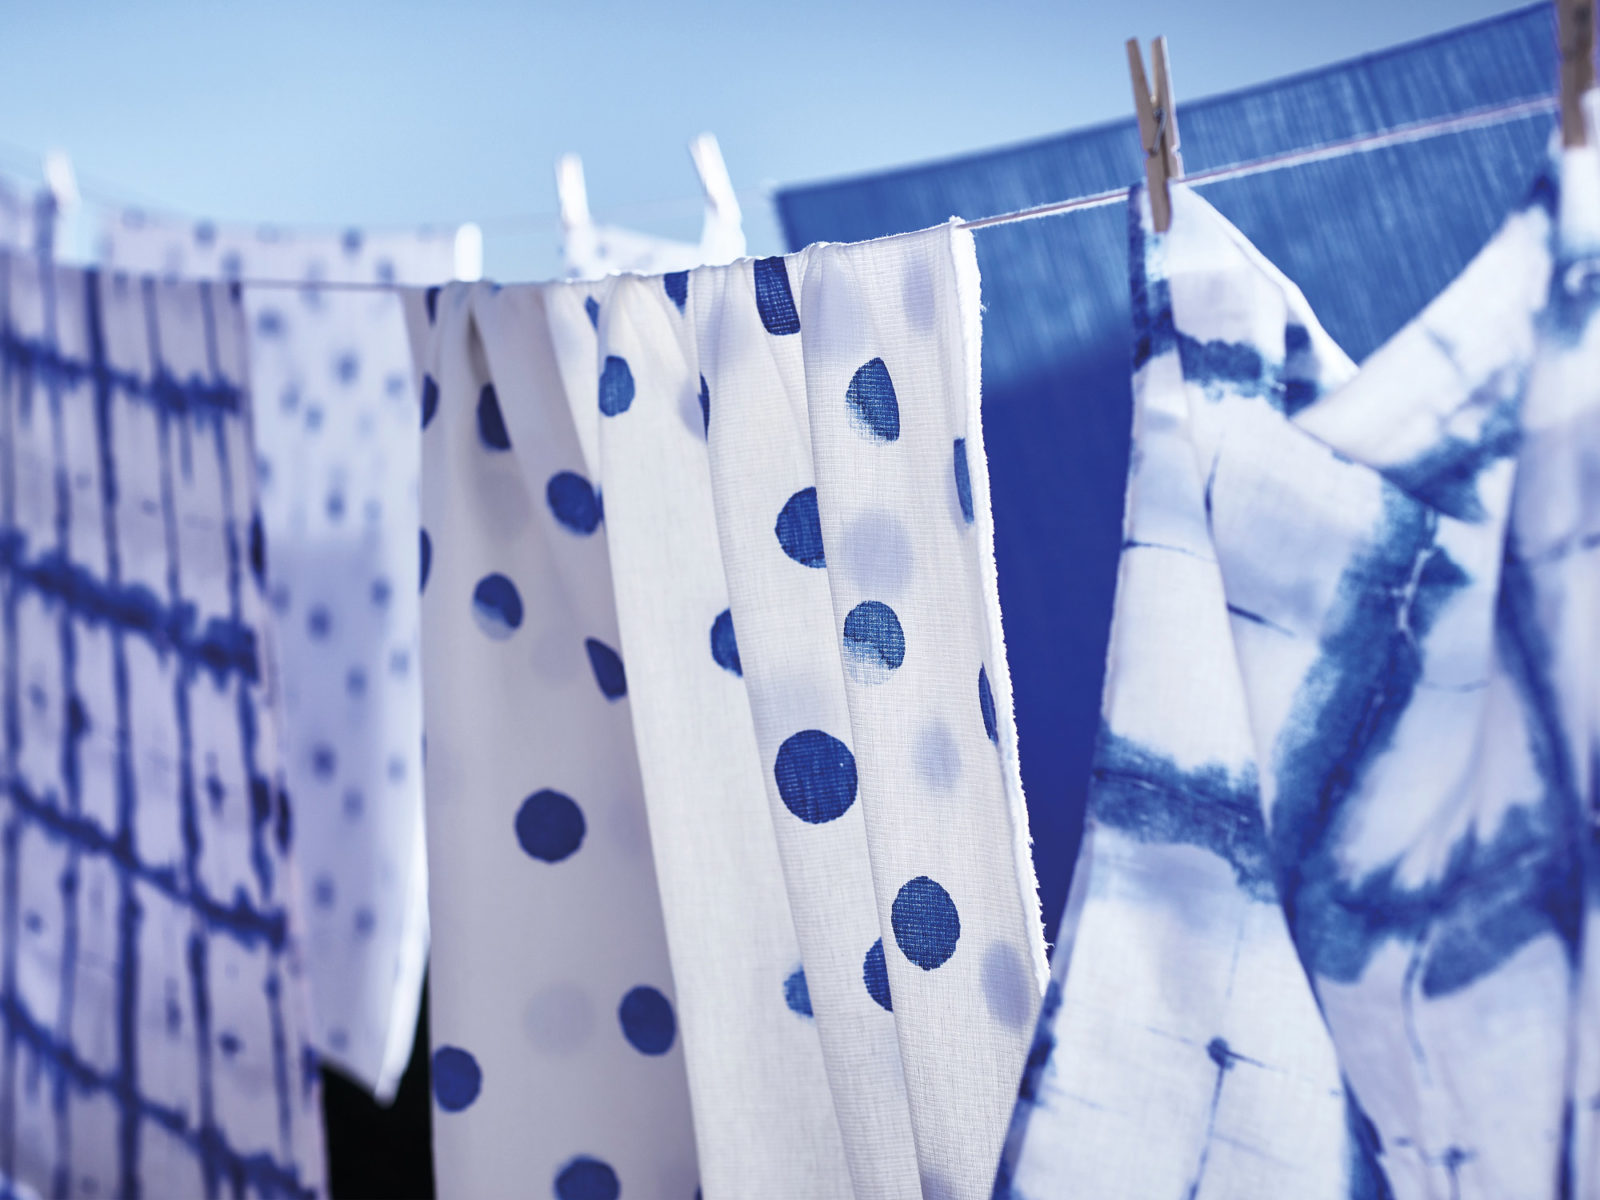 Textilier i olika blåvita mönster hänger på en tvättlina mot blå himmel.